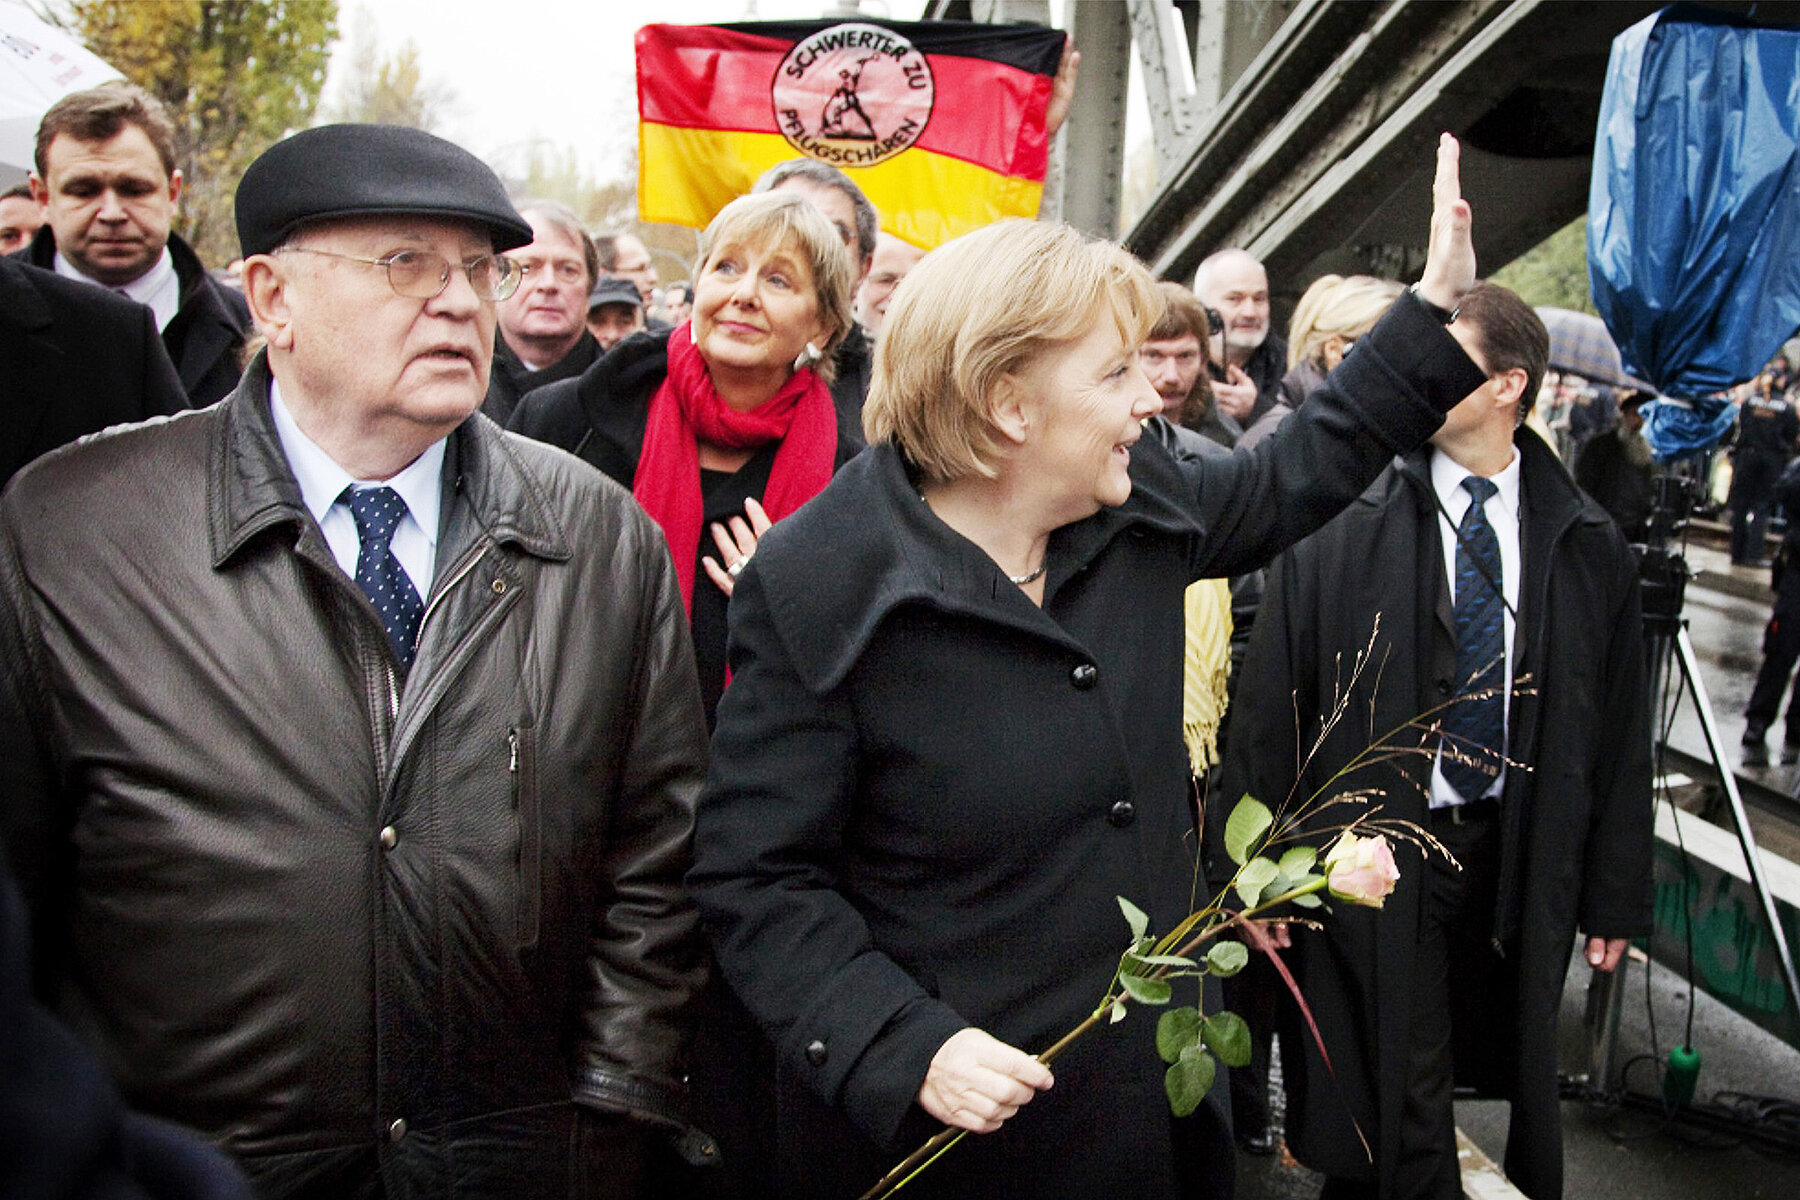 Michael Gorbatschow links und Angela Merkel rechts an der Bernauer Straße auf der Bösebrücke. Merkel hält eine Rose in der Hand. Hinter ihnen wird eine Deutschlandfahne geschwenkt.